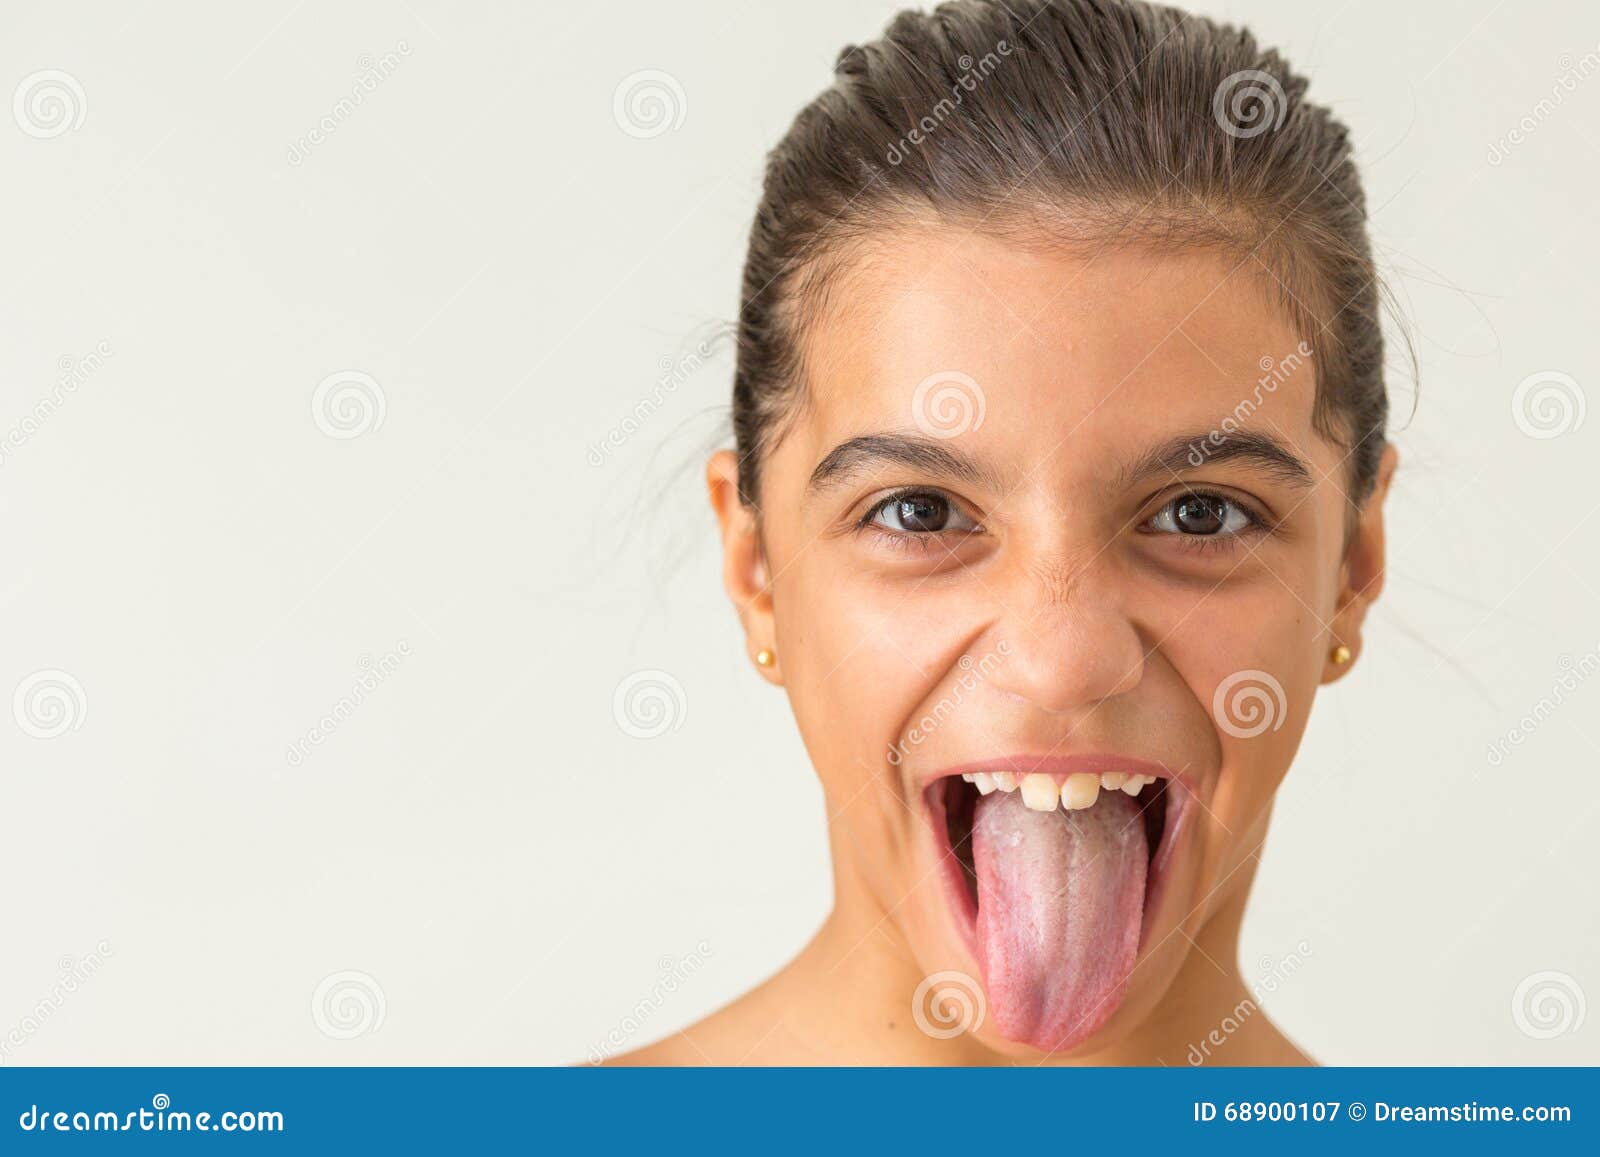 Teen Tongue Pics